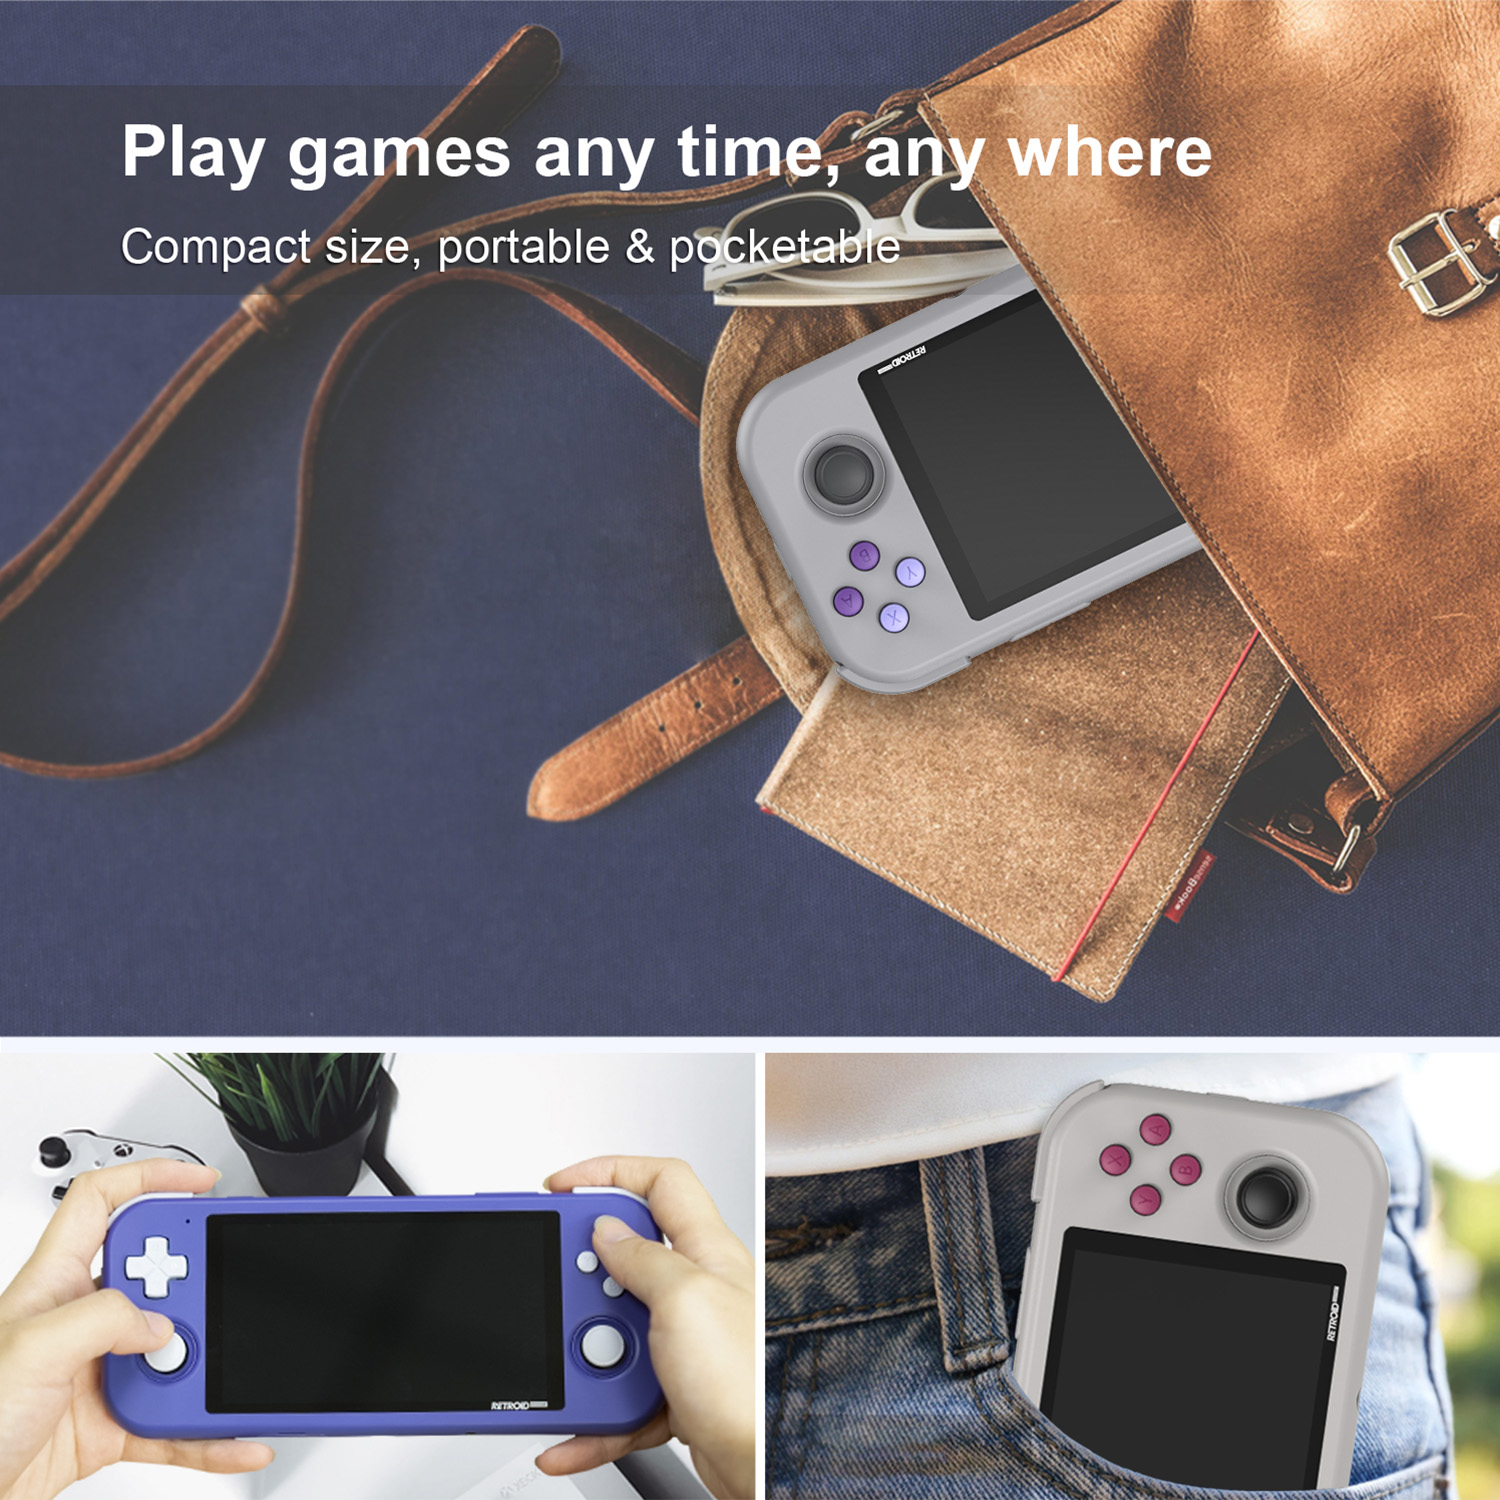 Retroid Pocket 3 Spiel-Handheld